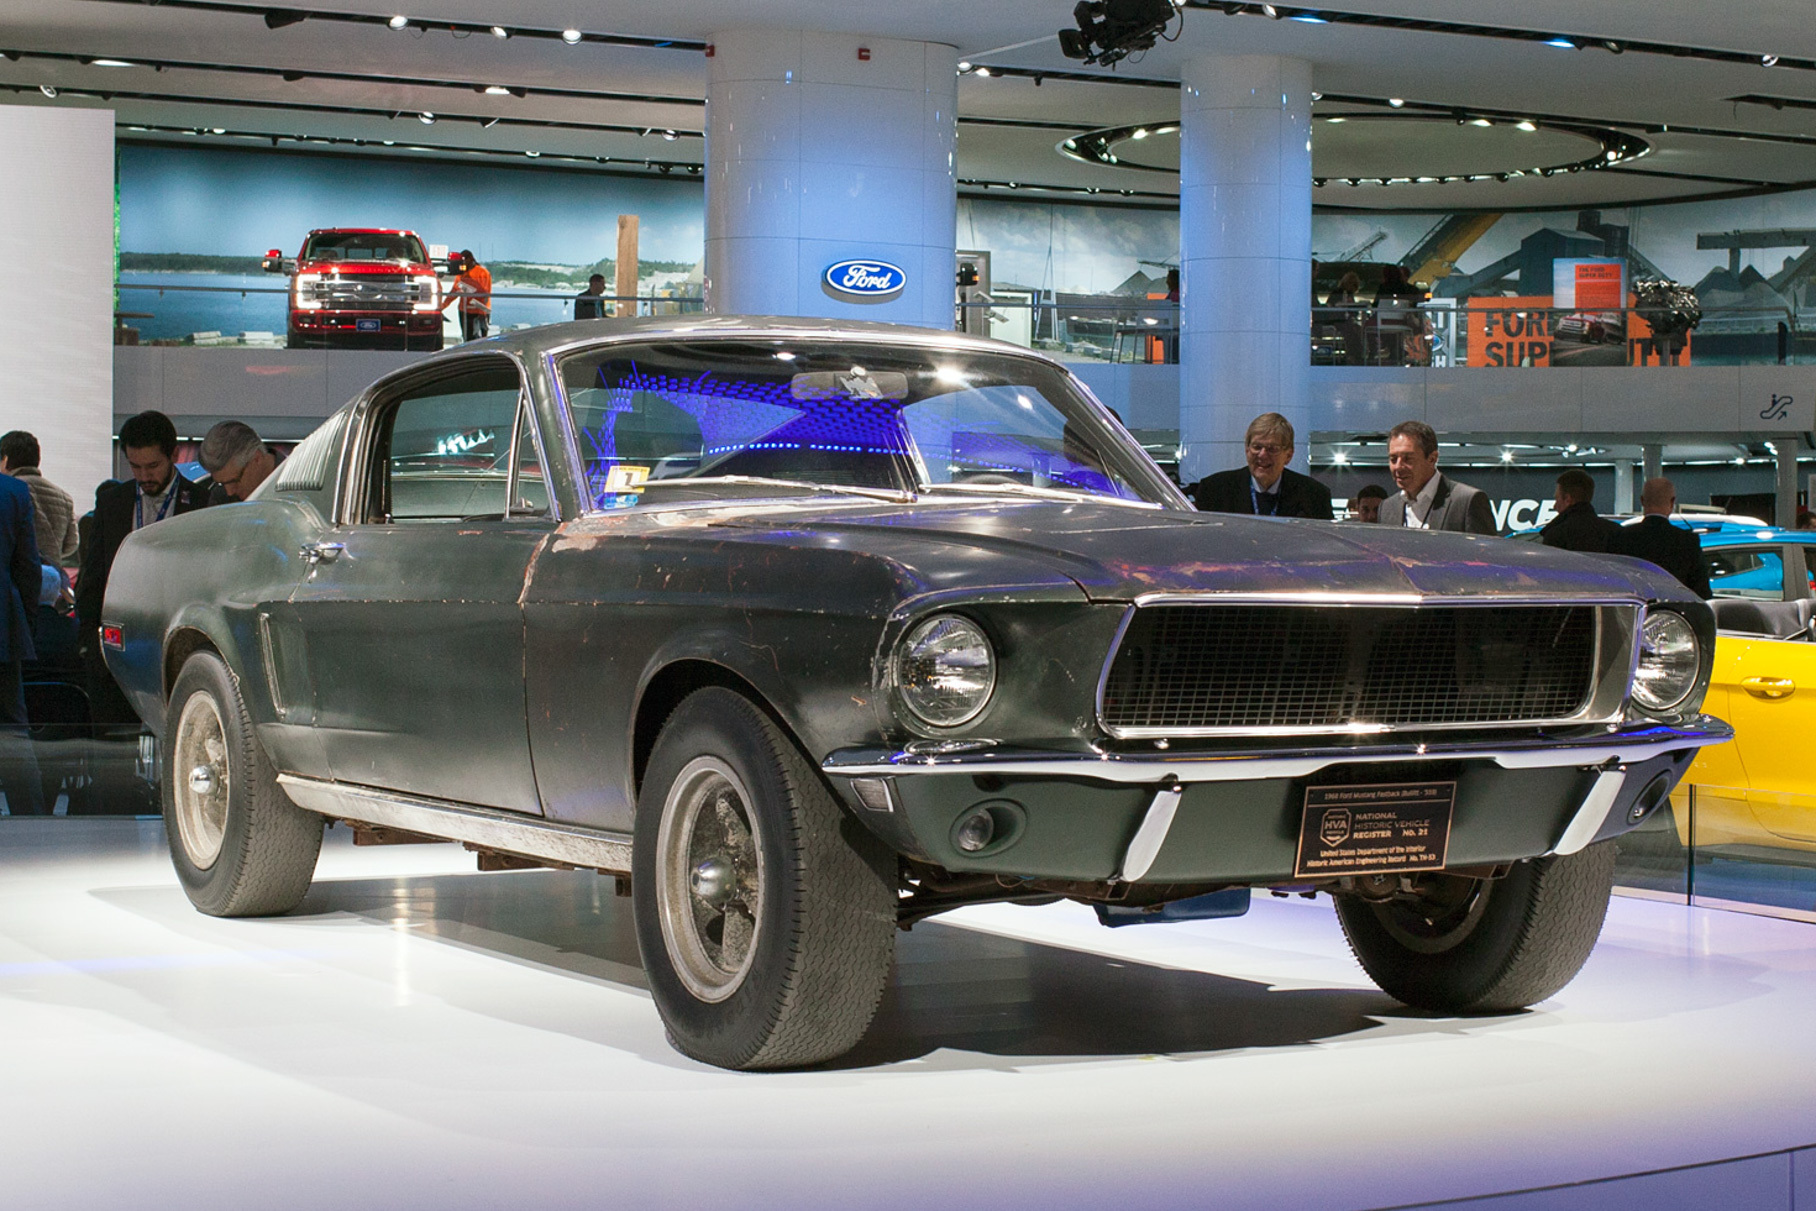 Сам Ford Mustang GT390 из фильма стал героем отдельной истории — [и её мы тоже рассказали](https://motor.ru/stories/mustang-bullitt-story.htm)